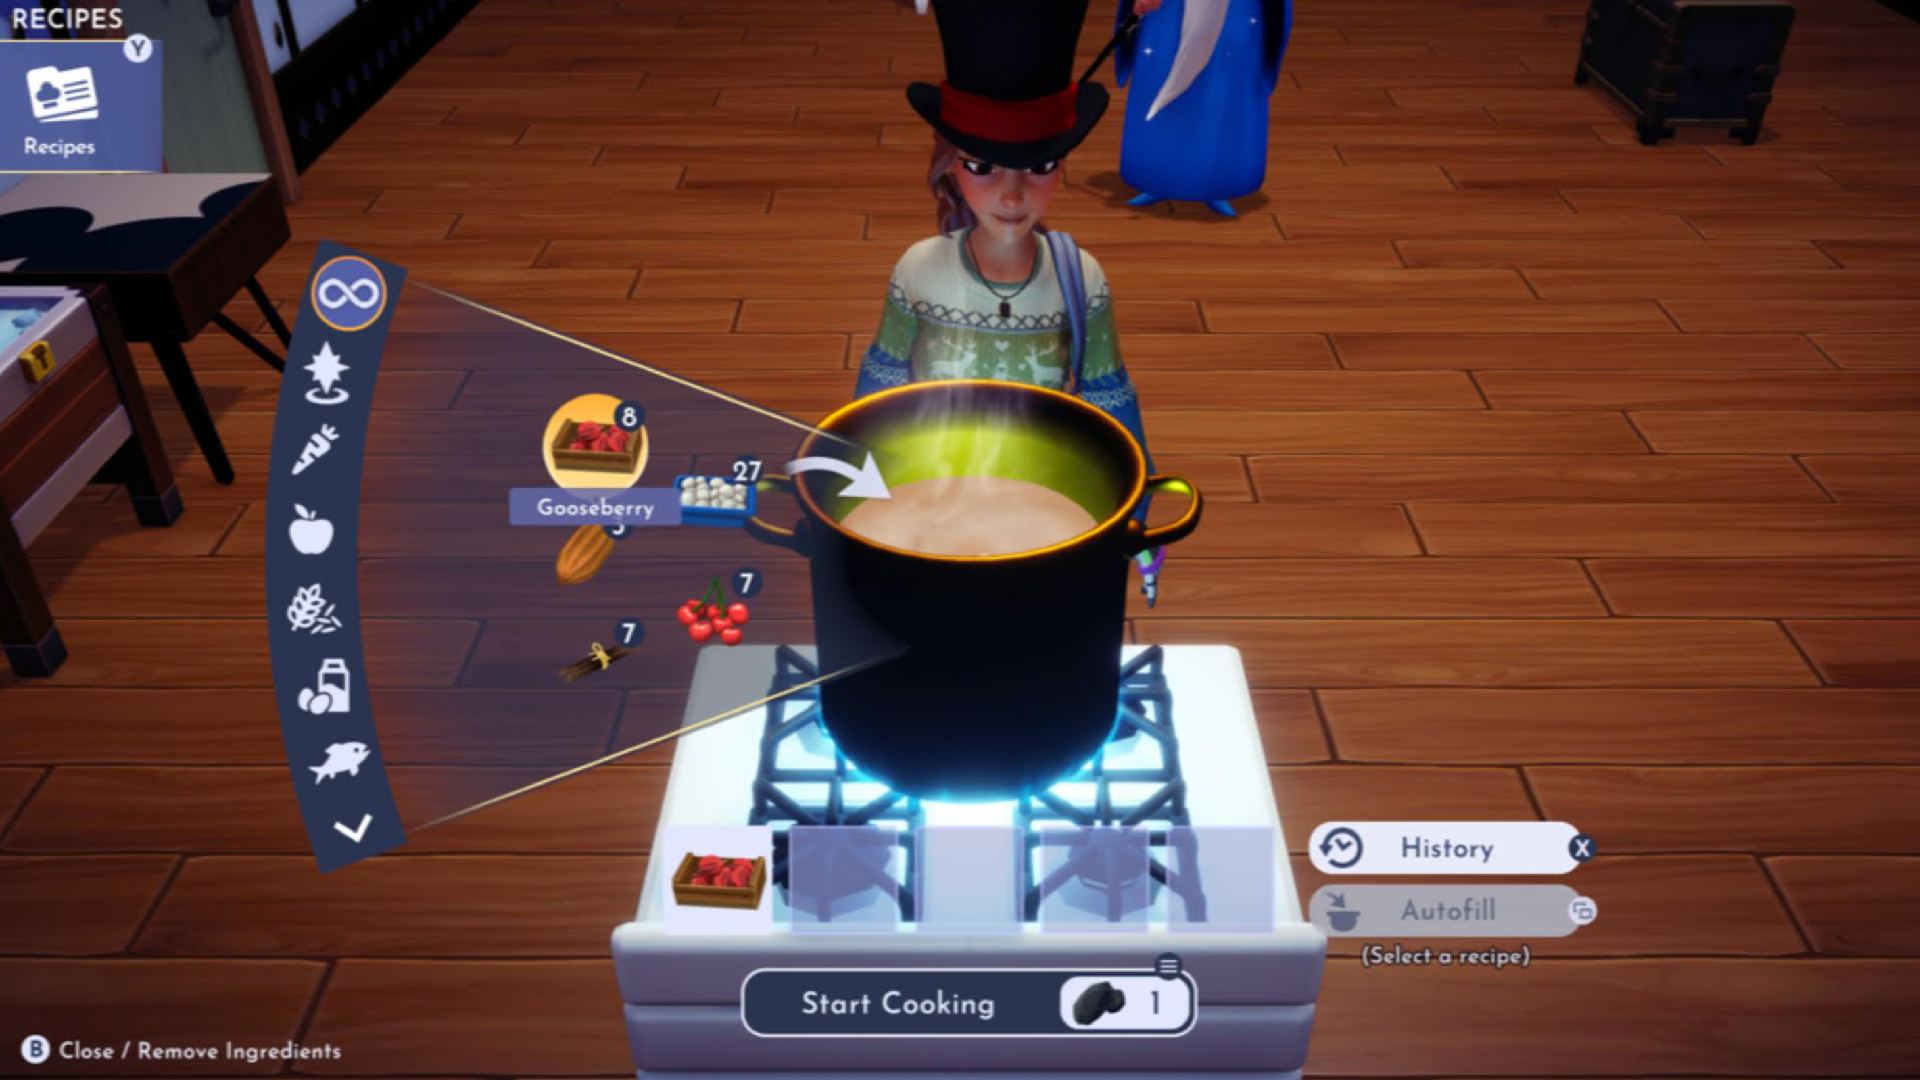 ディズニー ドリームライト バレー 料理の説明: プレイヤーが料理をしている様子が見られる